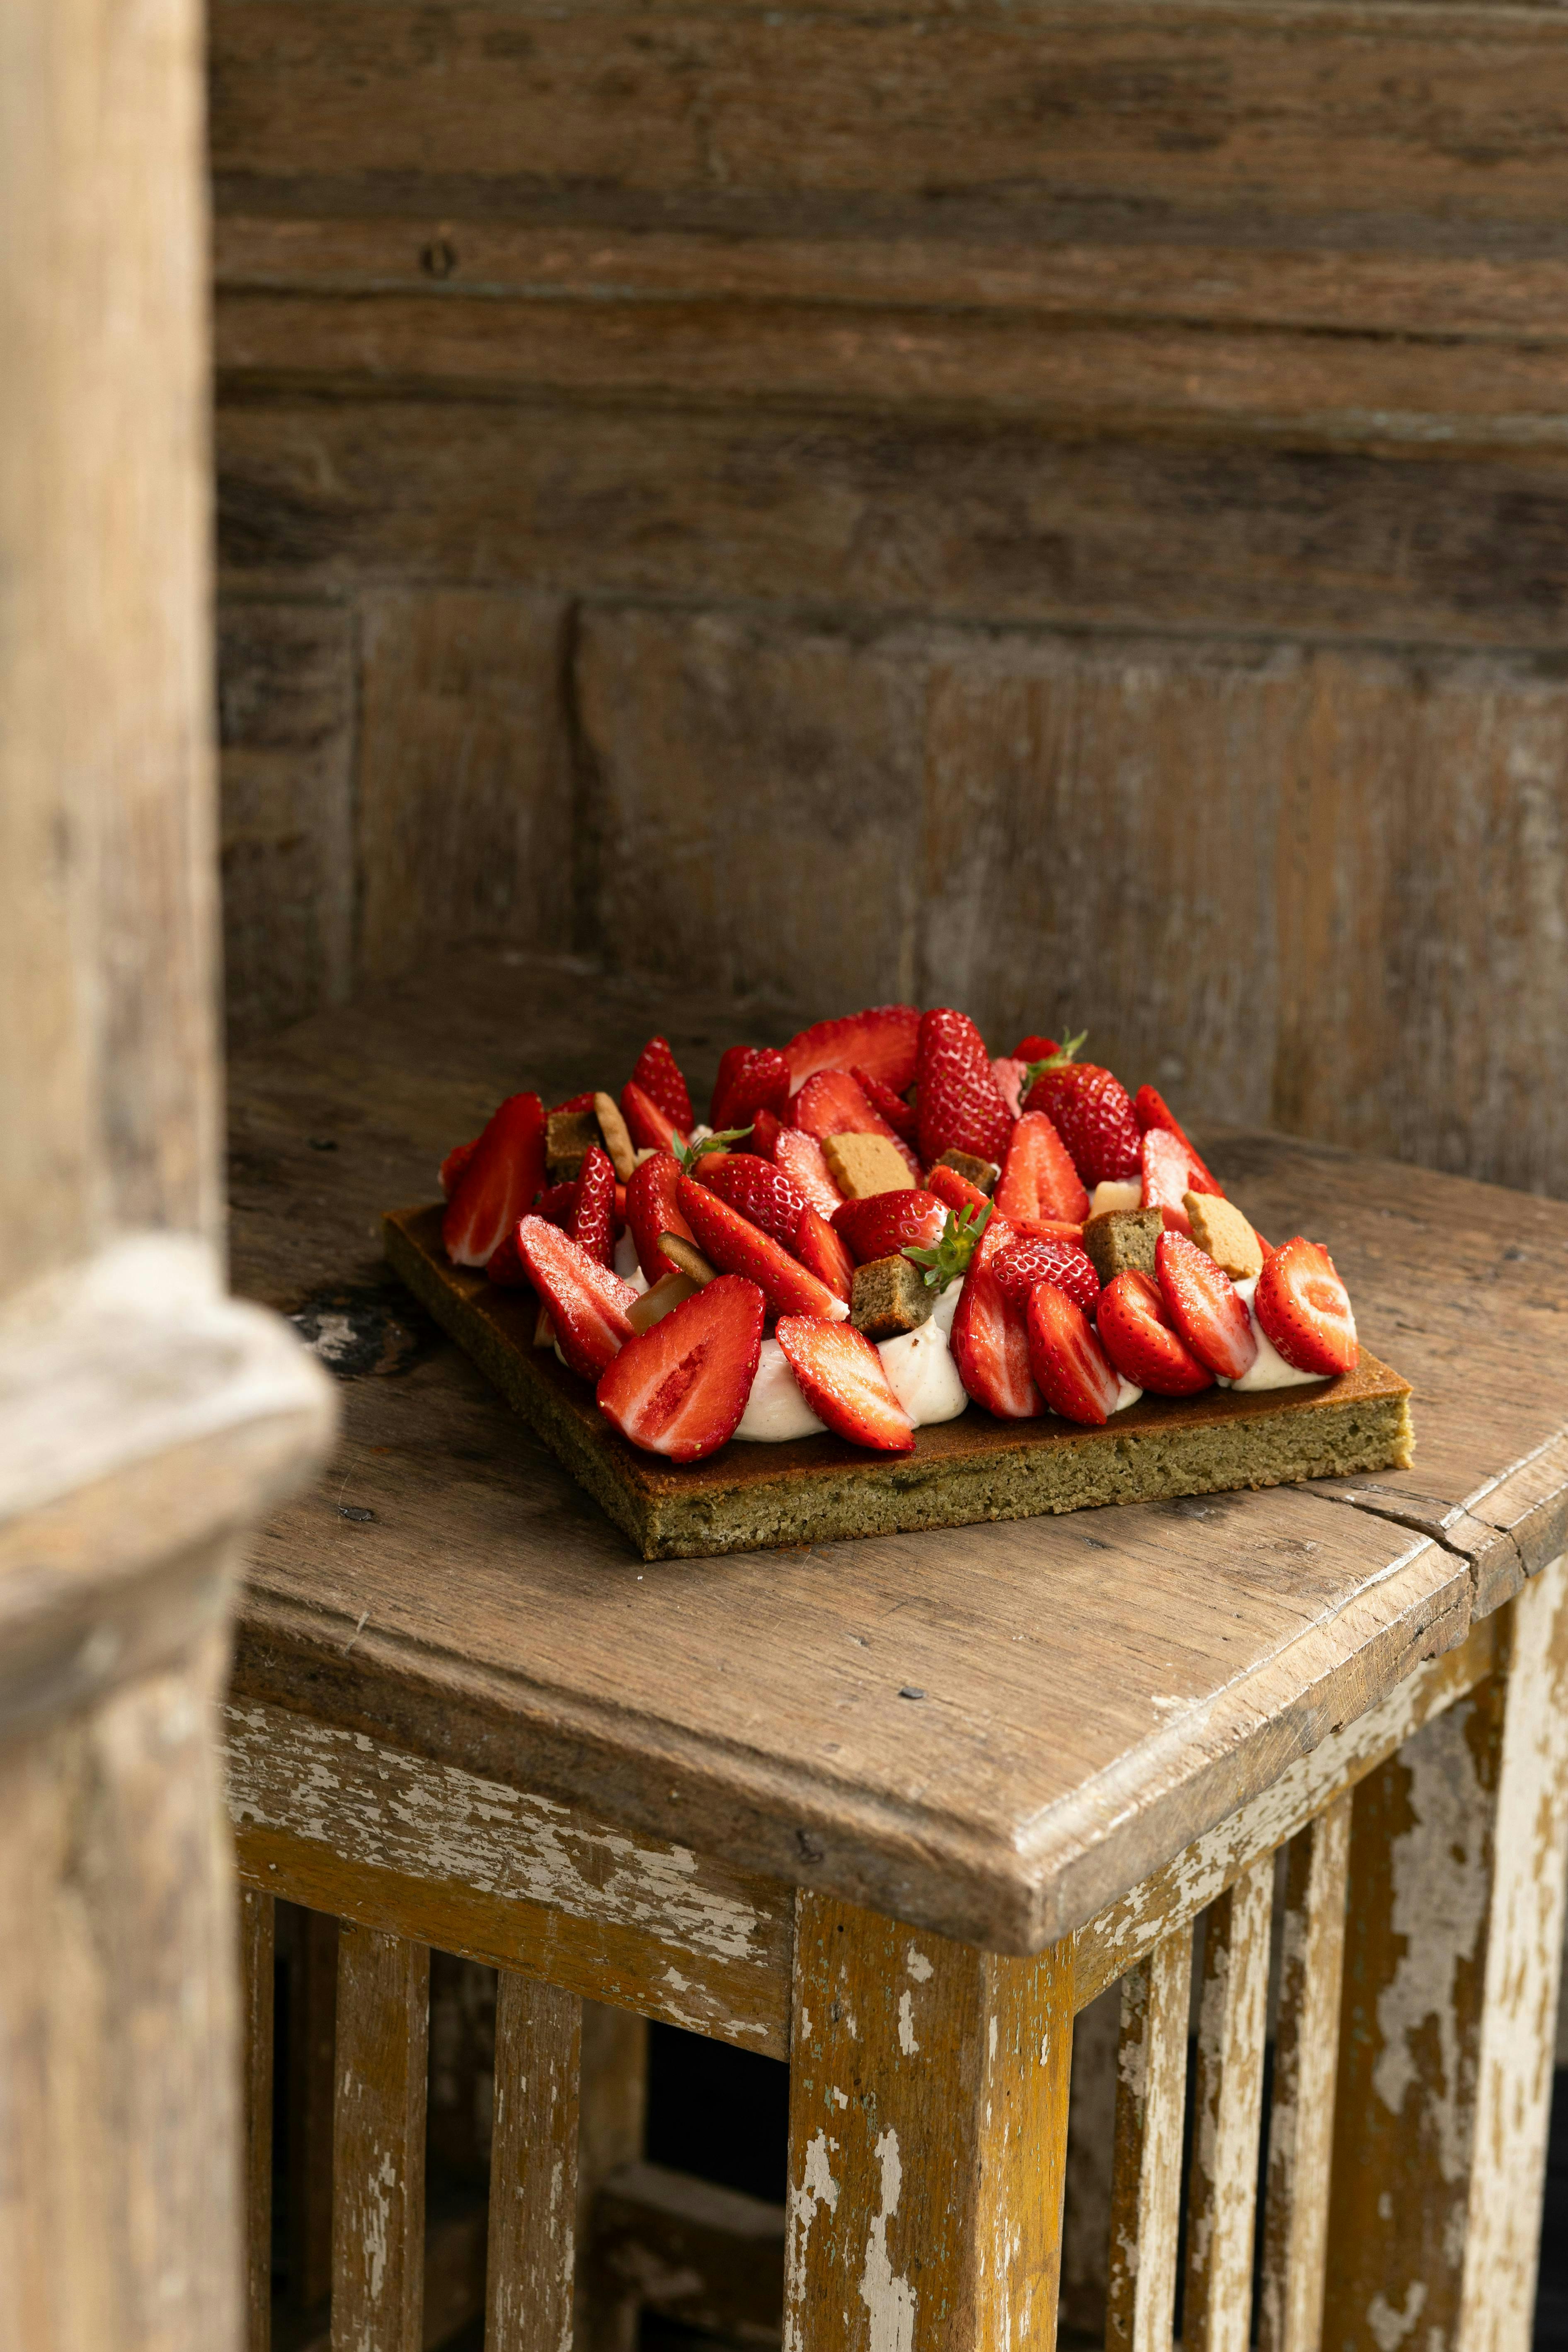 berry food fruit plant produce strawberry wood hardwood